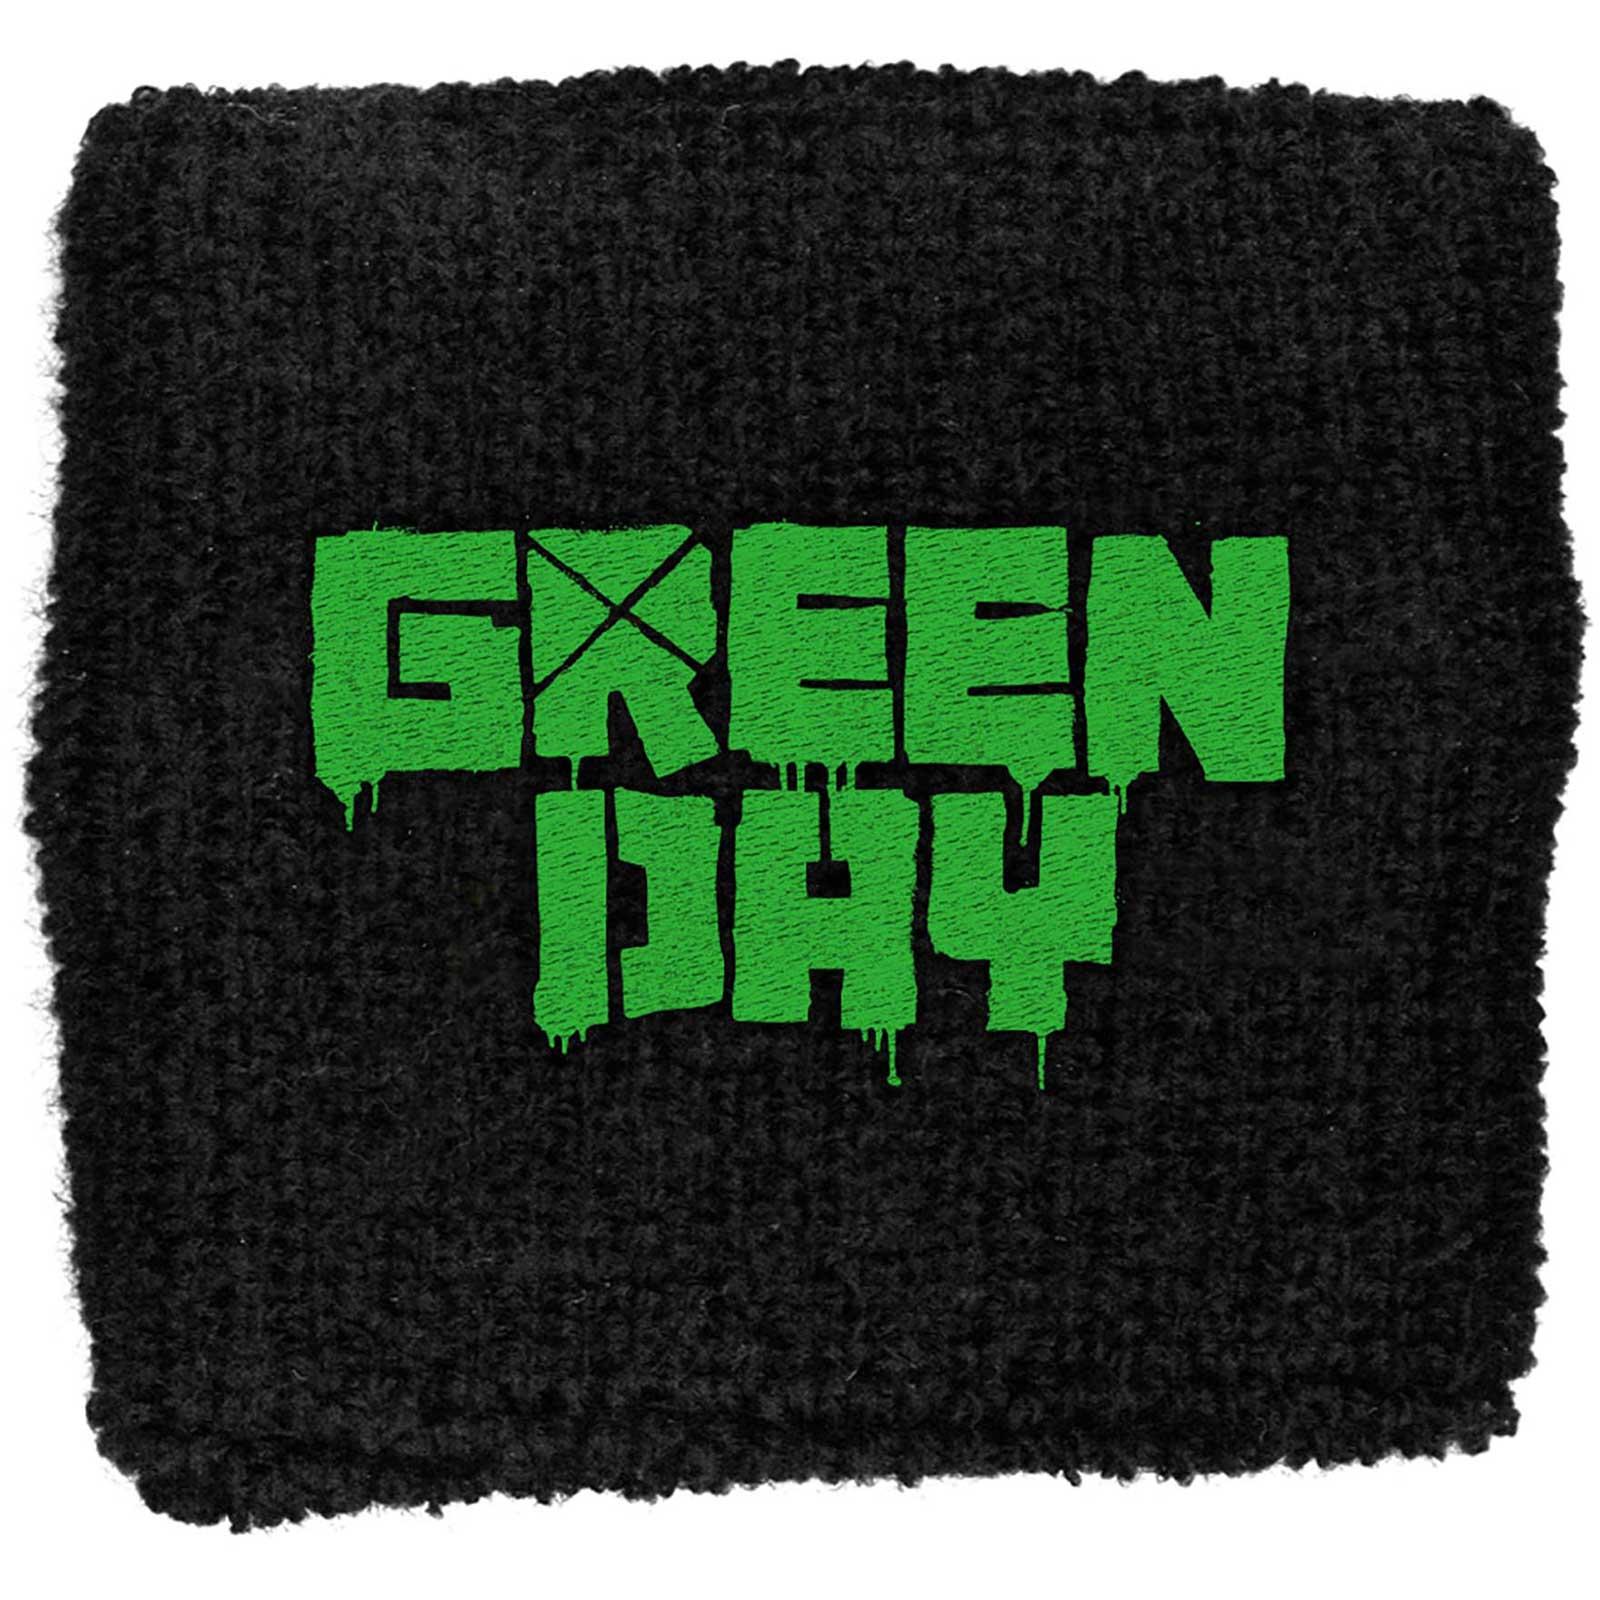 (グリーン・デイ) Green Day オフィシャル商品 ユニセックス ロゴ 布地 リストバンド スエットバンド ..